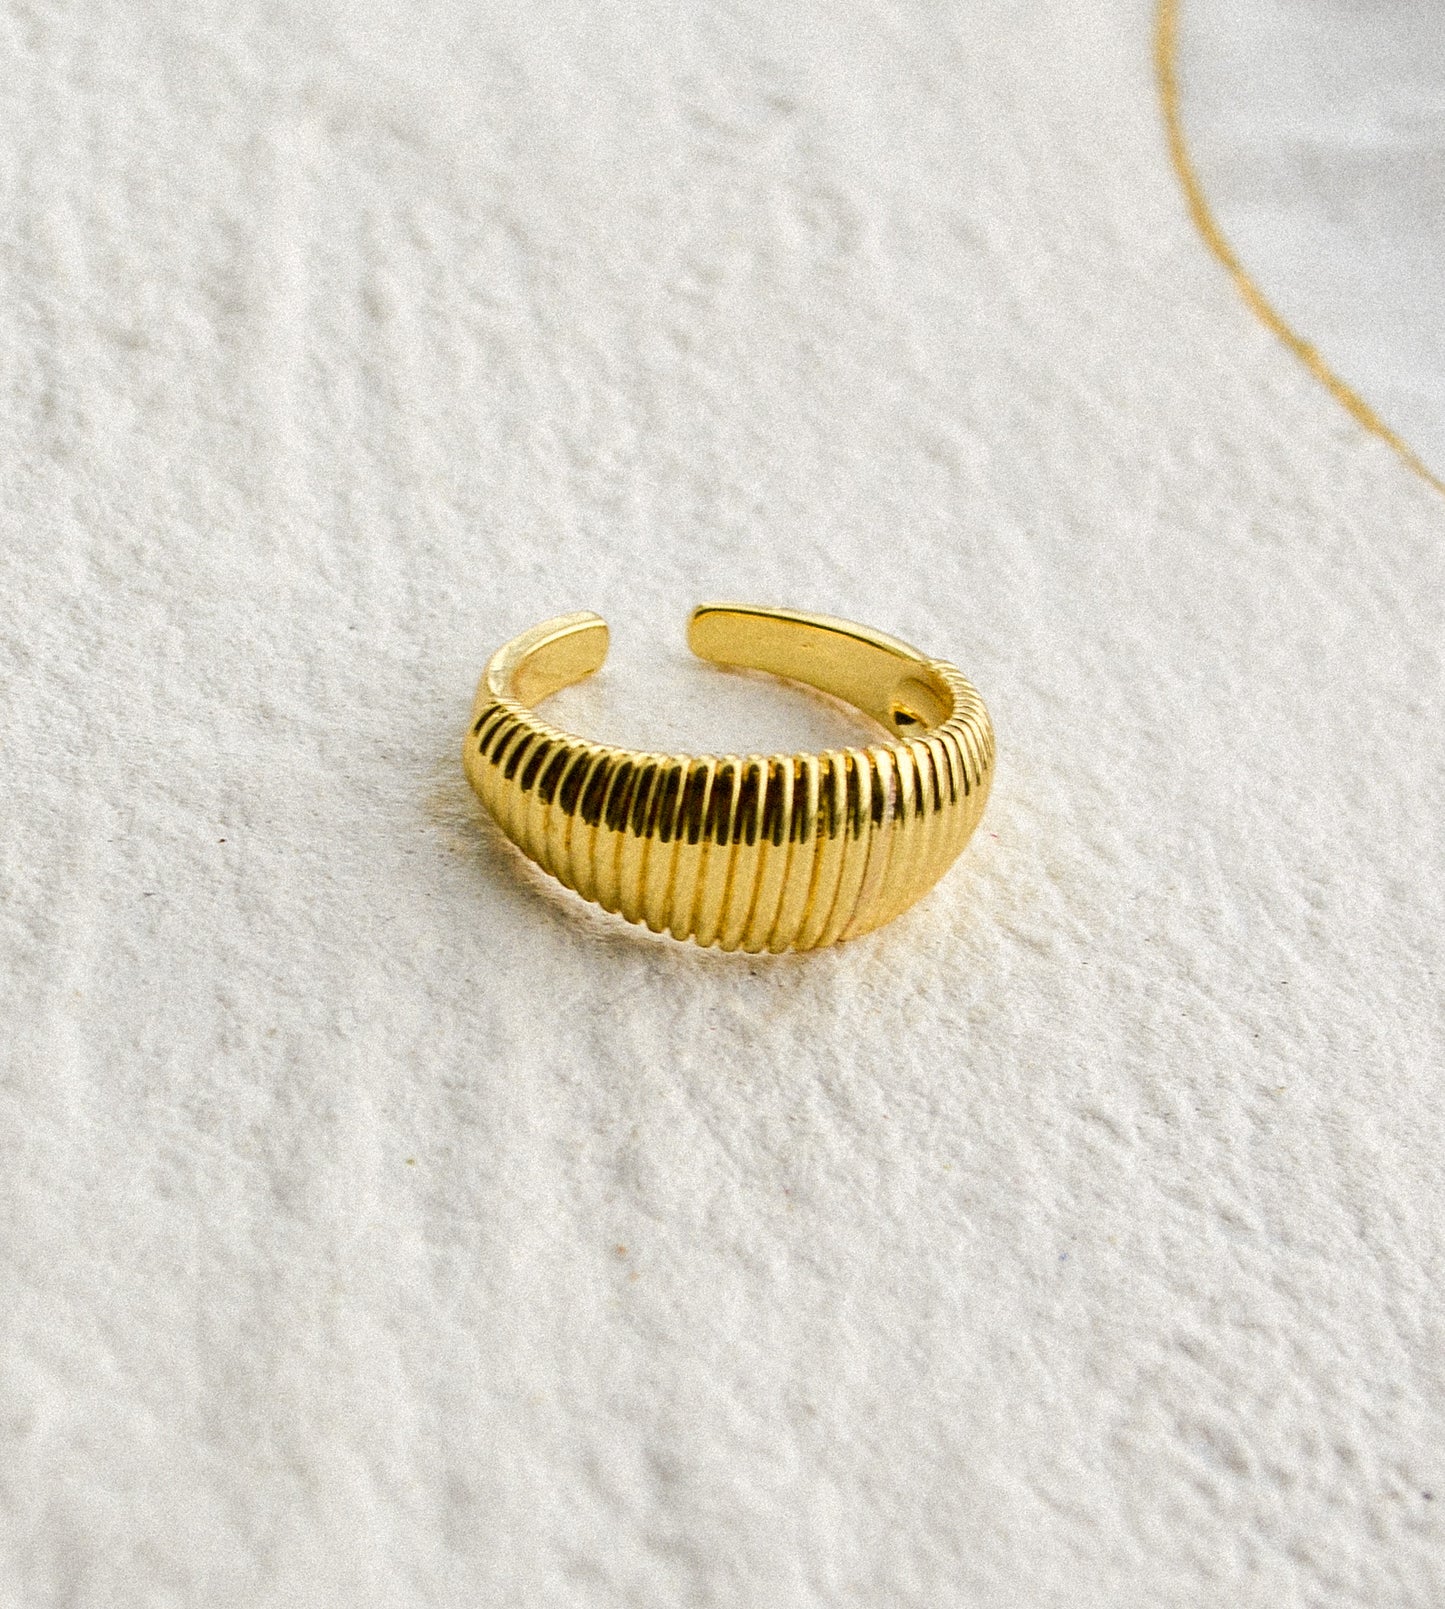 18k gold filled adjustable dome ring